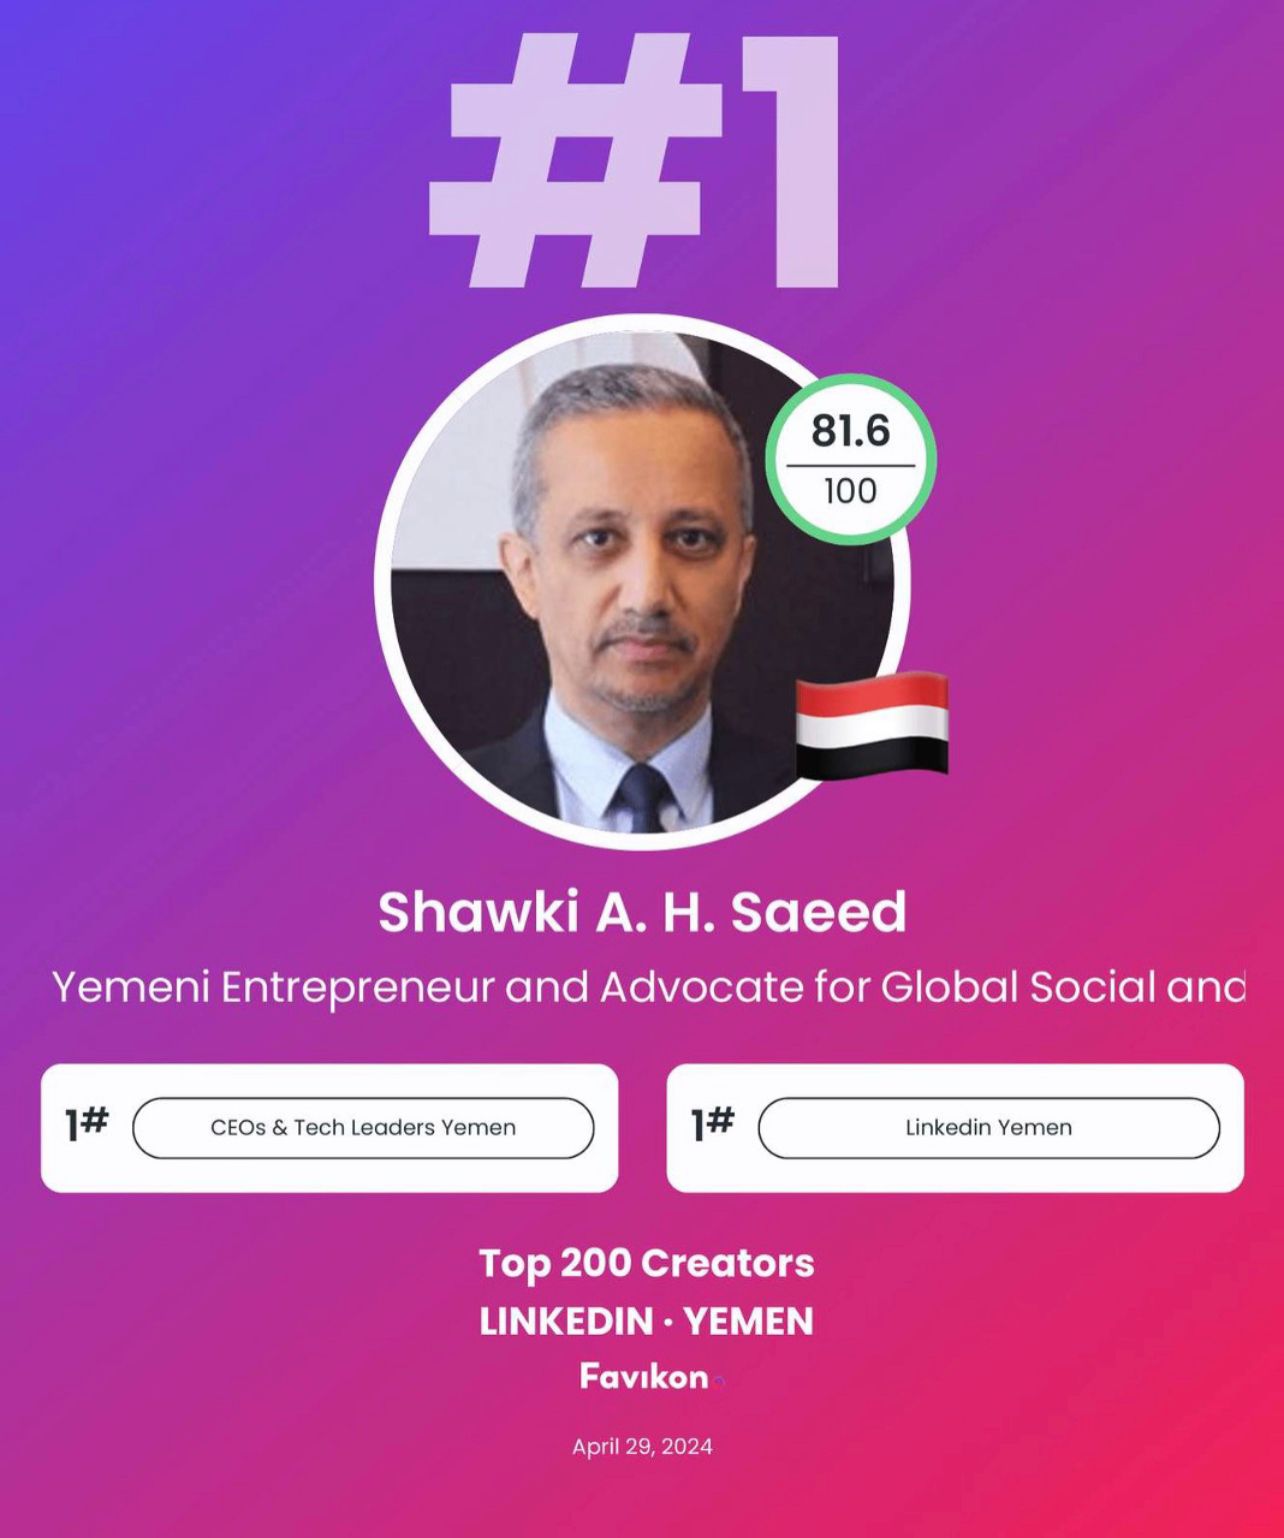 شوقي احمد هائل سعيد الشخصية الاكثر إلهاماً وتأثيرا اجتماعيا في اليمن